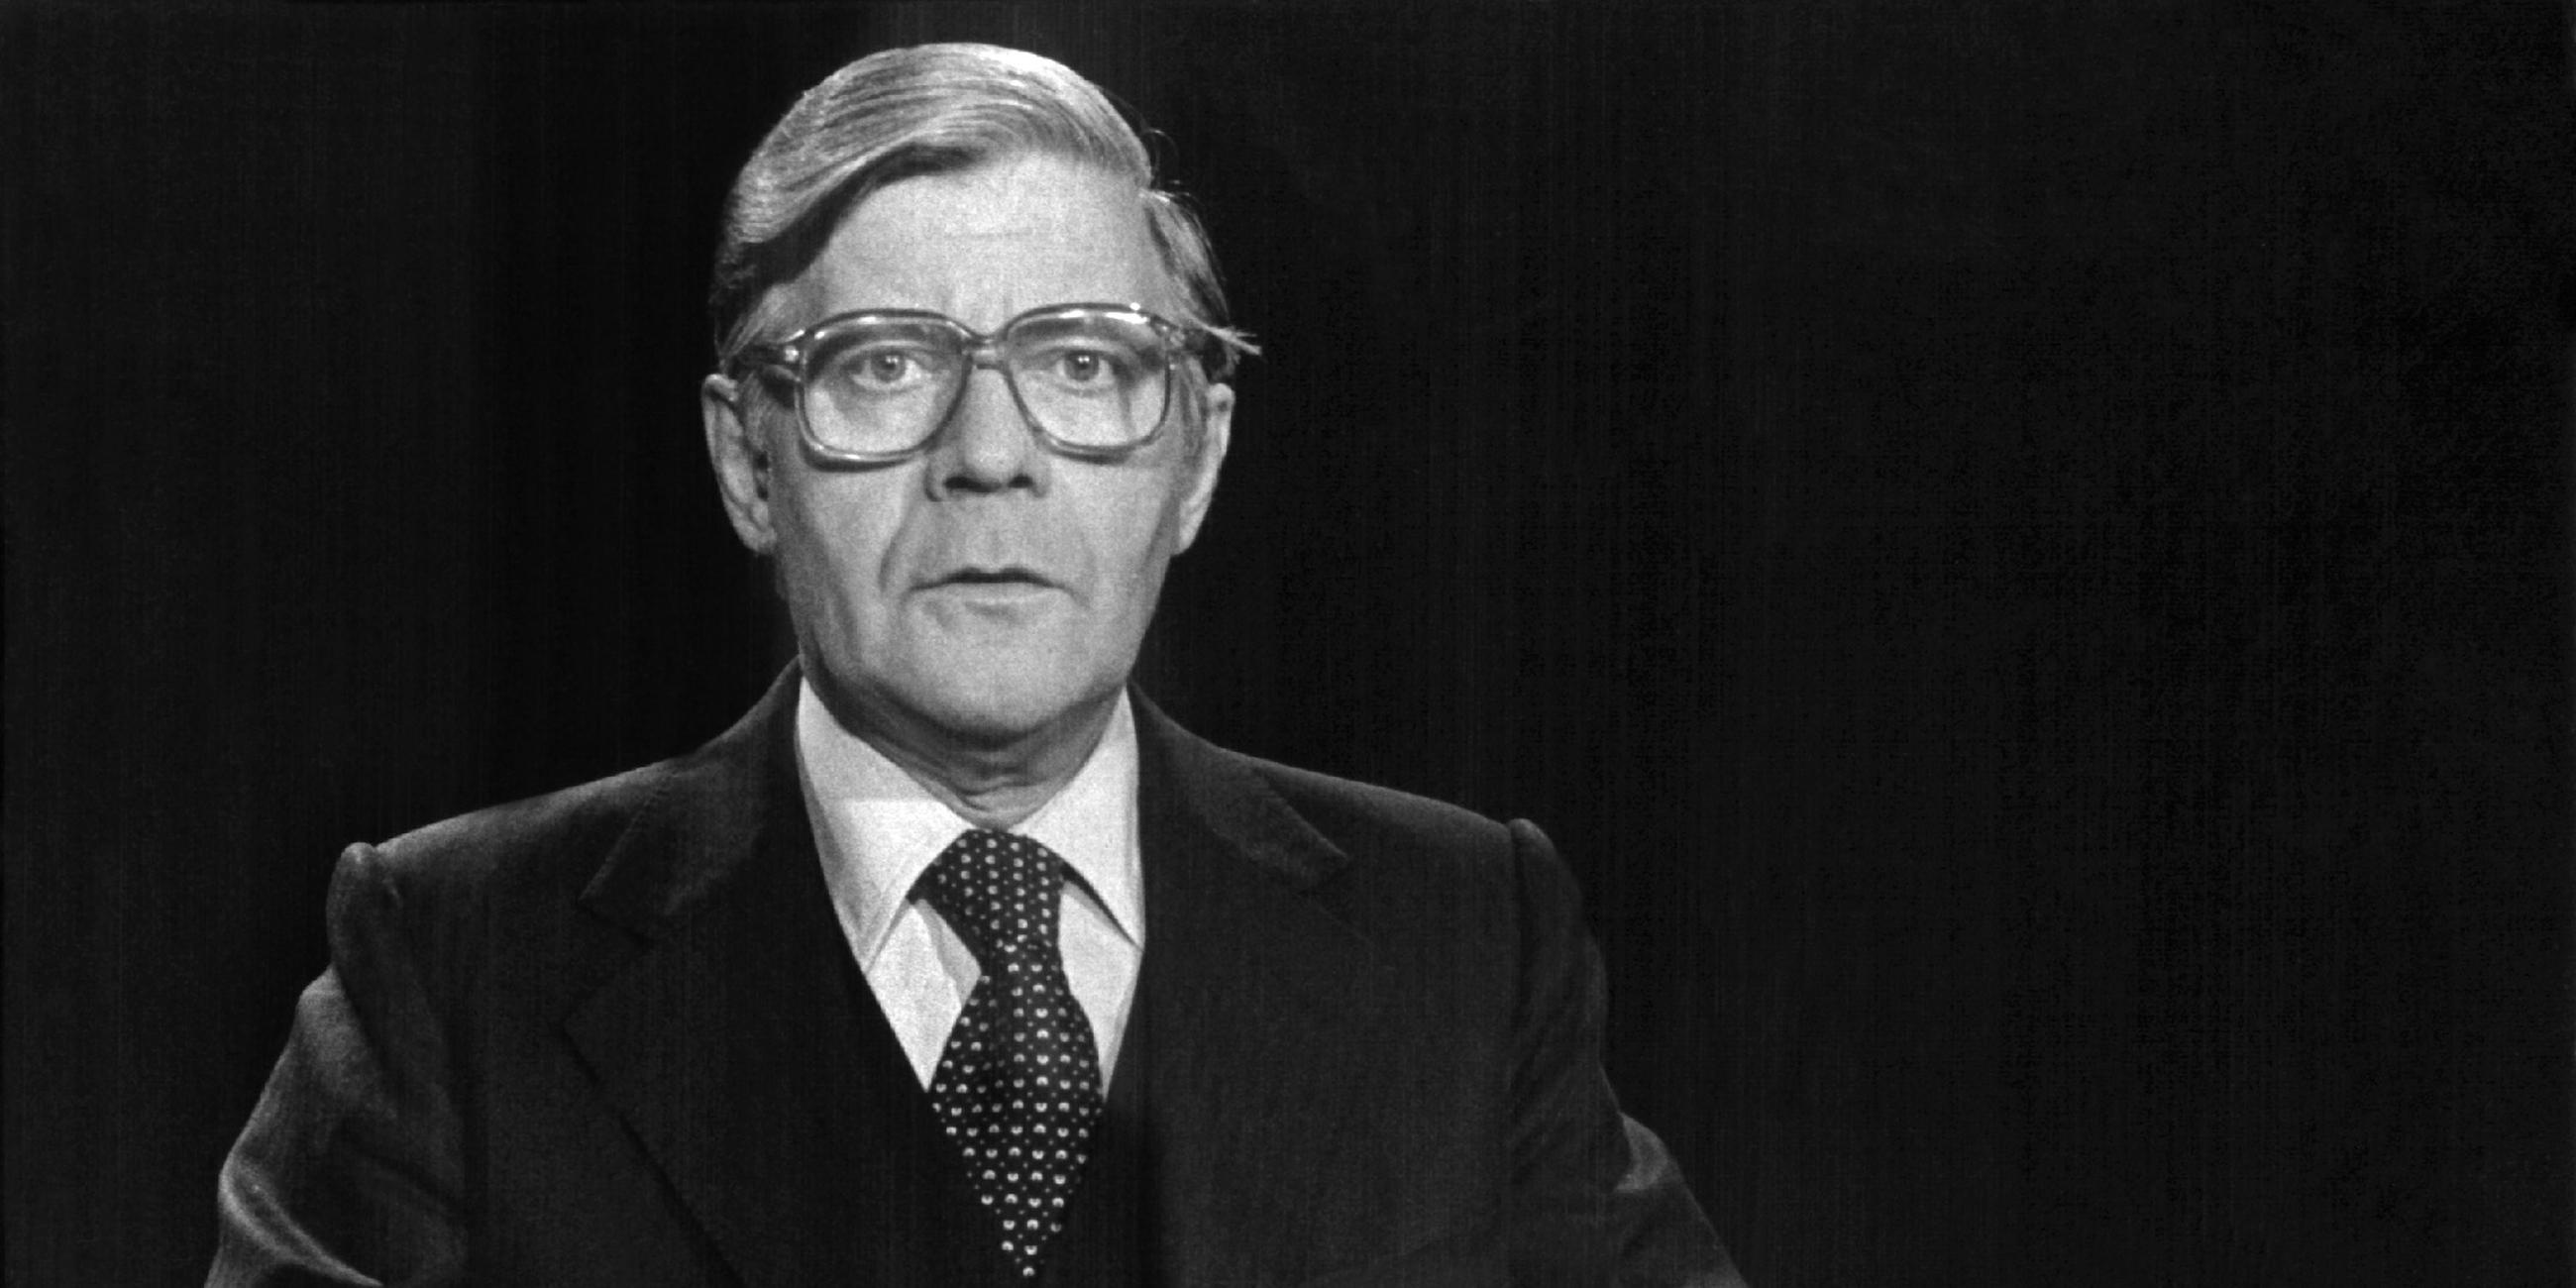 Kanzler Helmut Schmidt bei Fernsehansprache nach Schleyer-Tod 1977